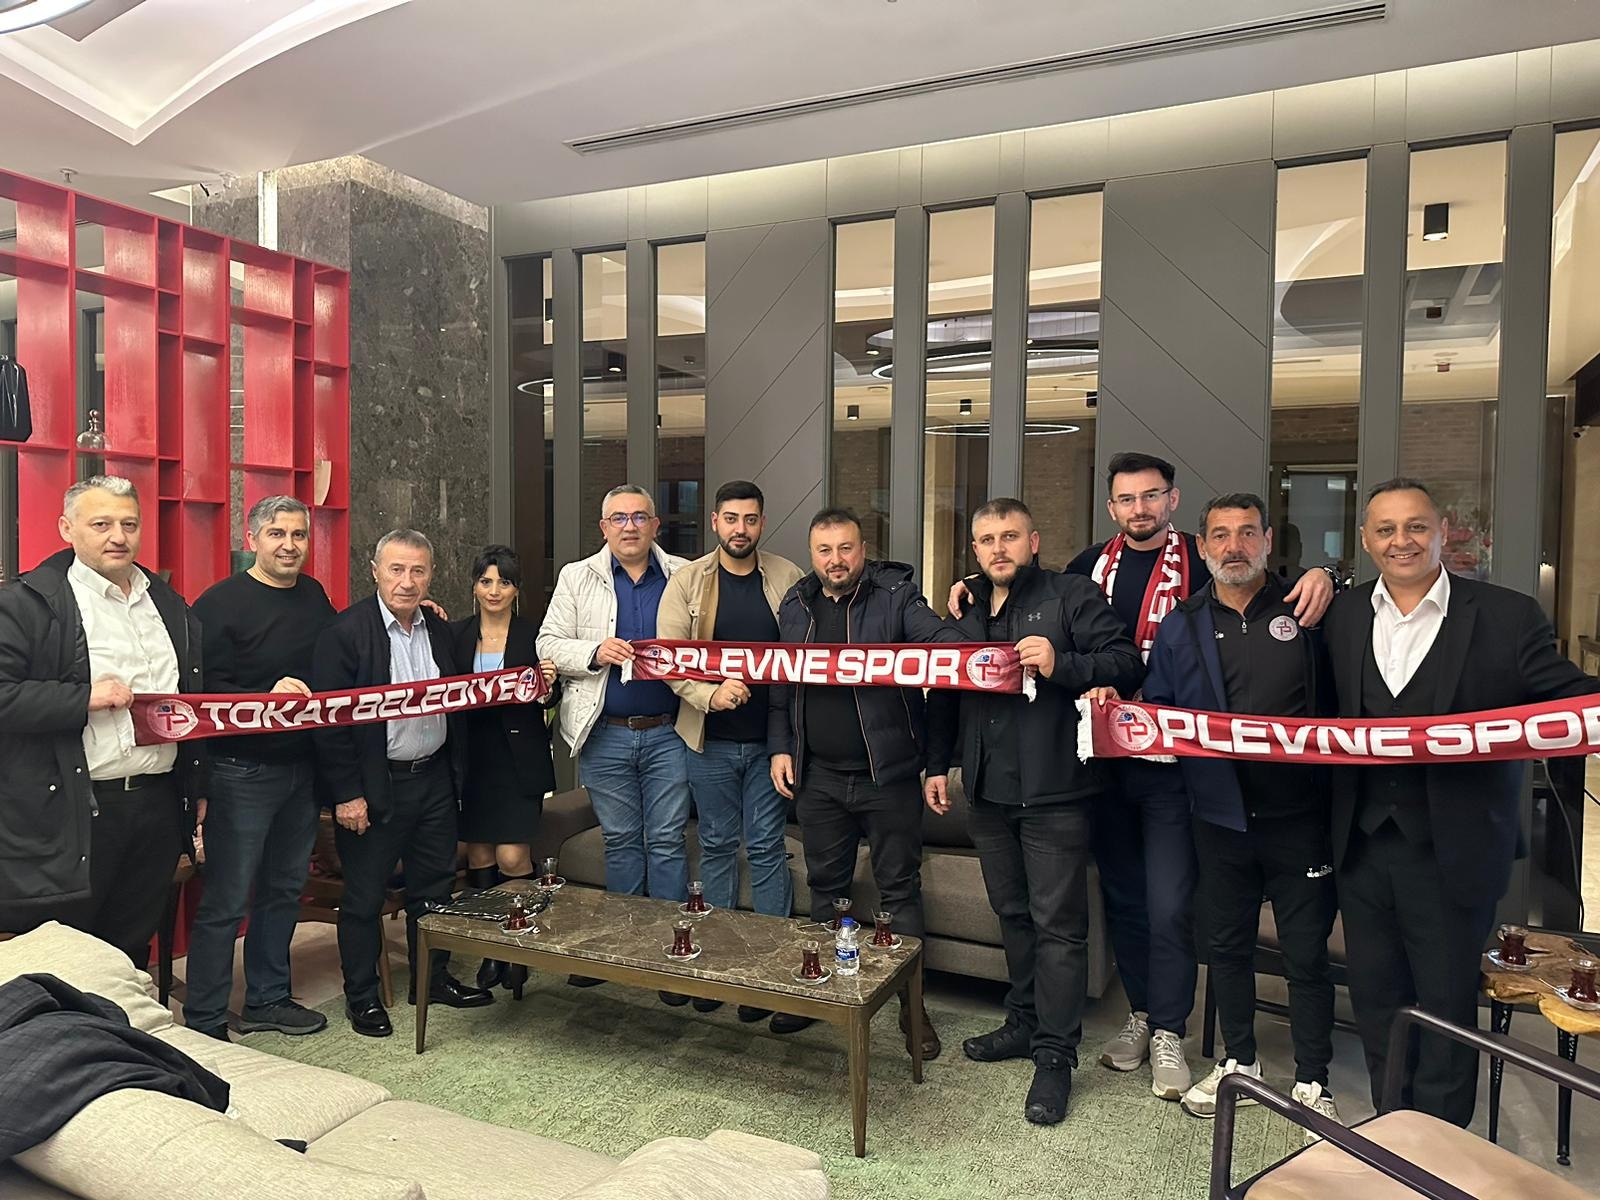 Tokat Belediye Plevnespor, Bursa Yıldırım Spor İle Büyük Maça Hazırlanıyor